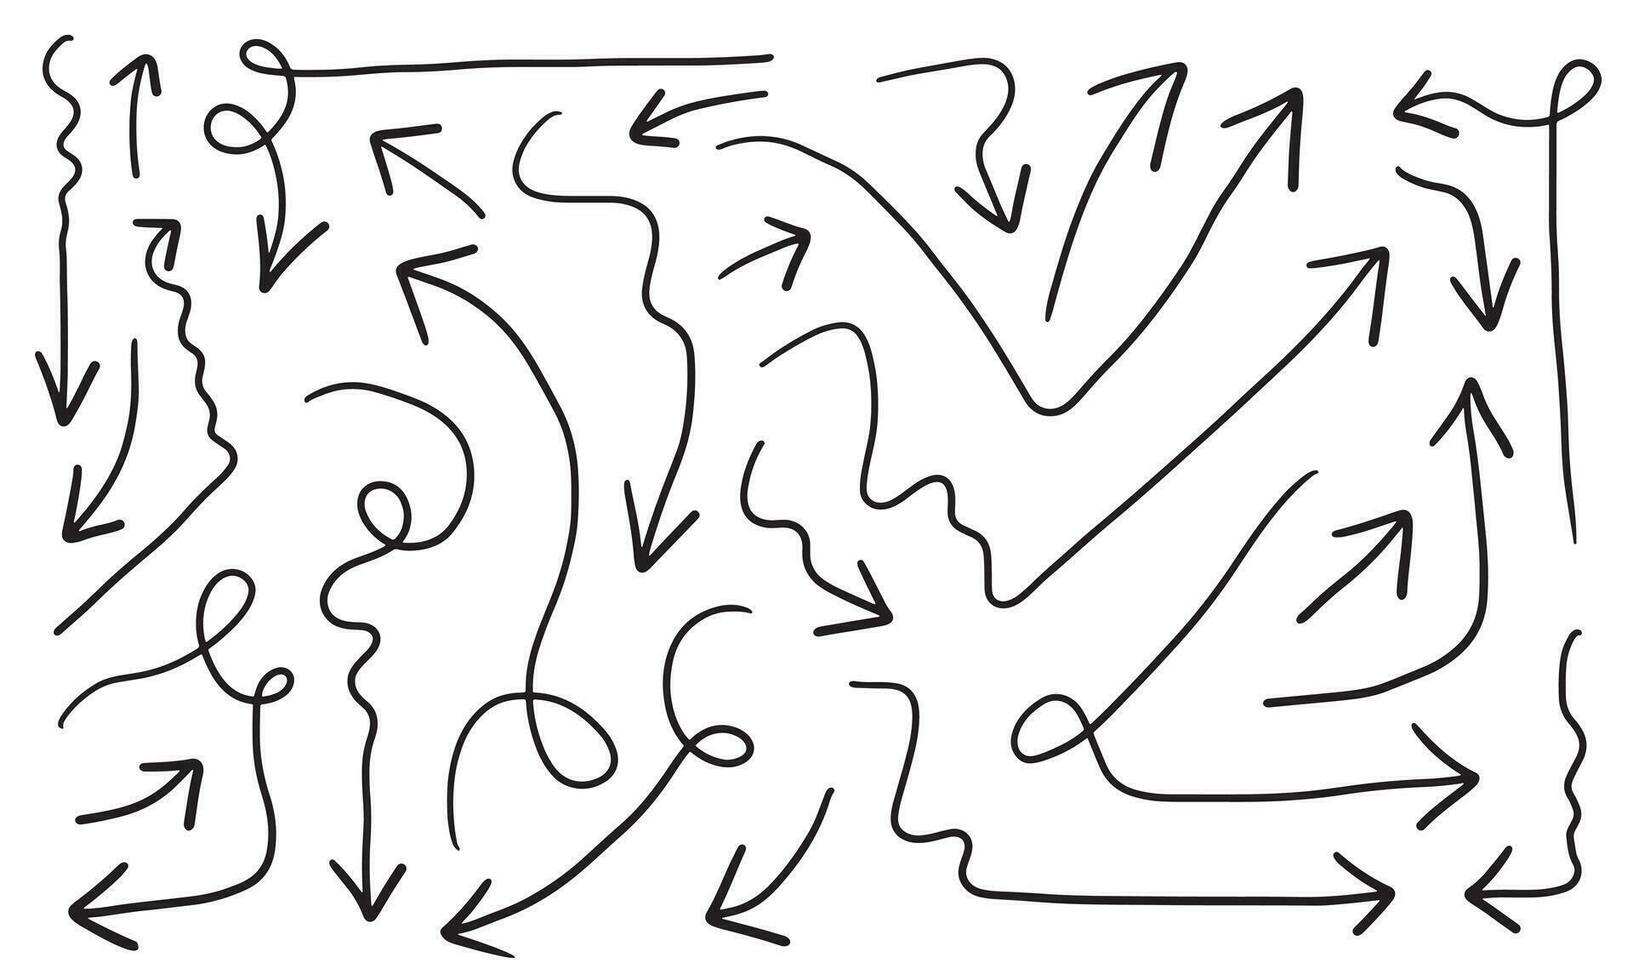 Hand gezeichnet Pfeile Vektor Symbol set.doodle Pfeile Vektor einstellen Illustration.